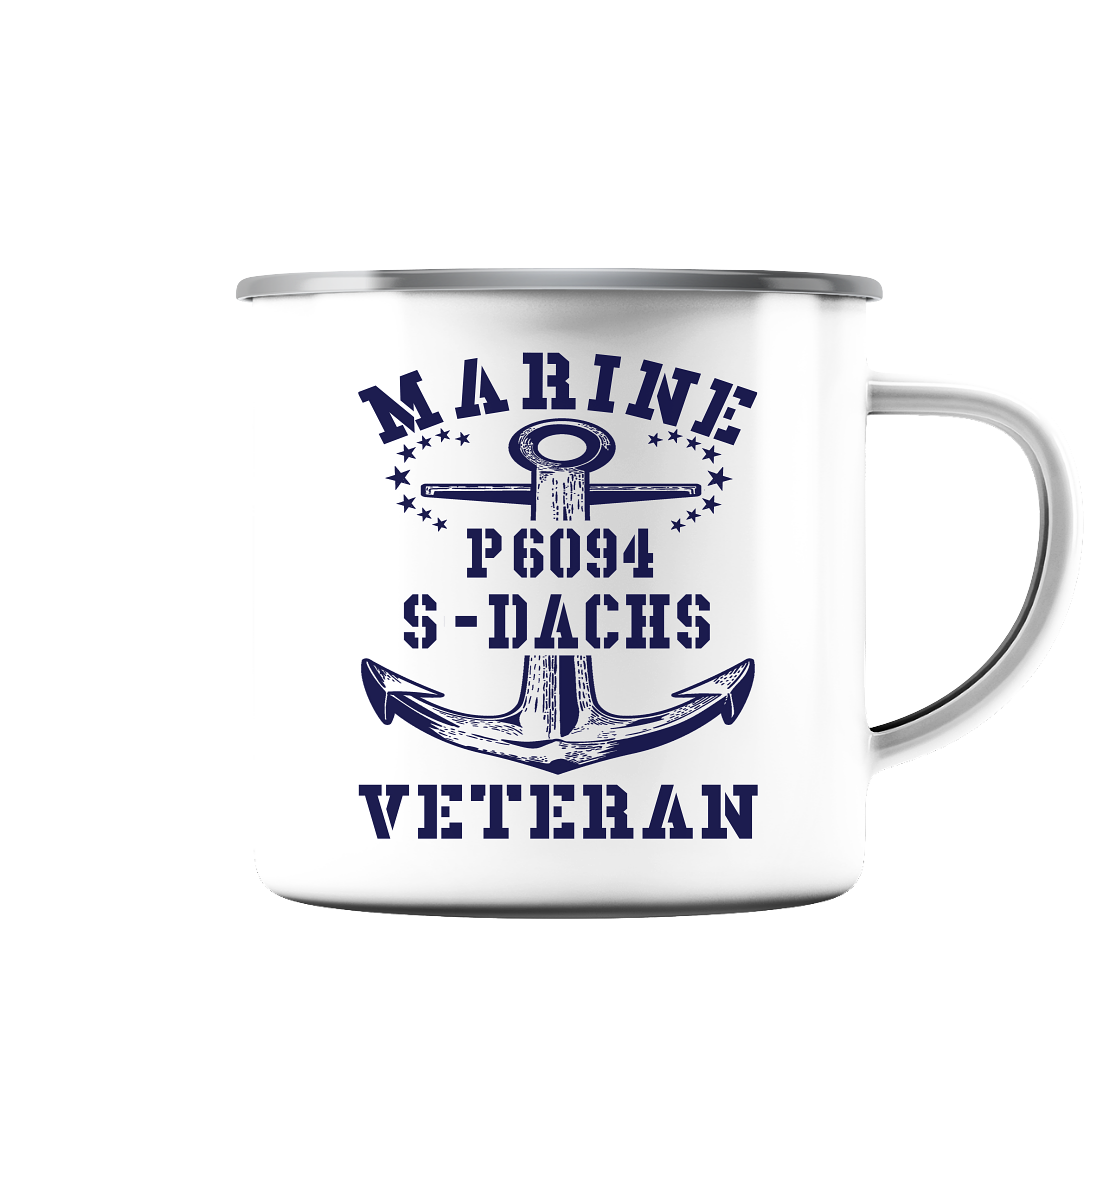 P6094 S-DACHS Marine Veteran - Emaille Tasse (Silber)